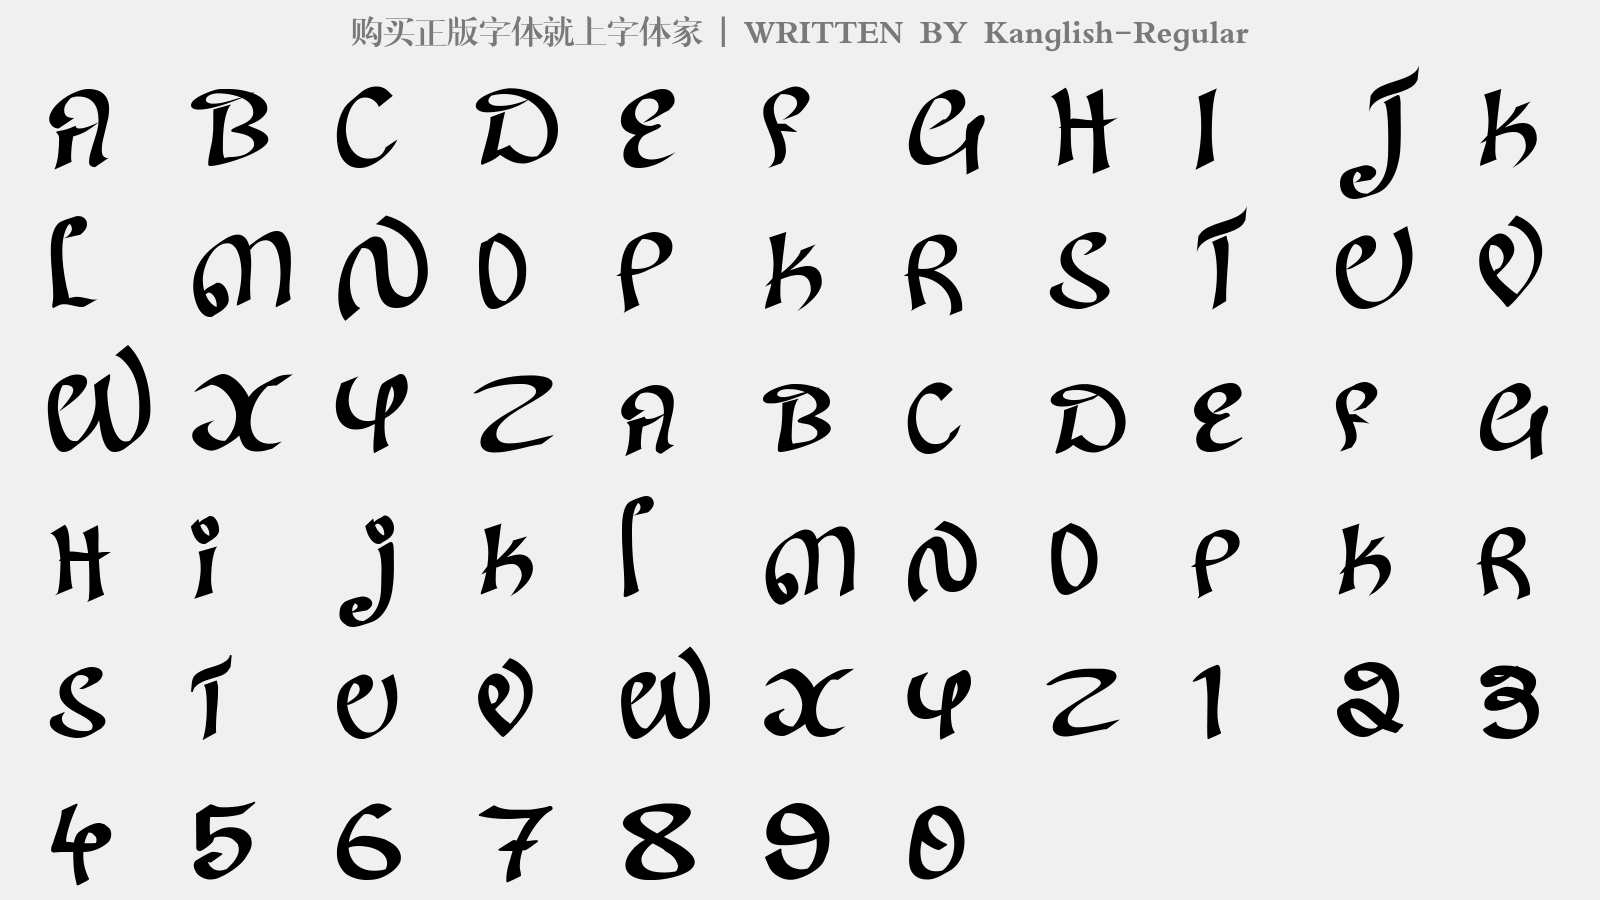 Kanglish-Regular - 大写字母/小写字母/数字